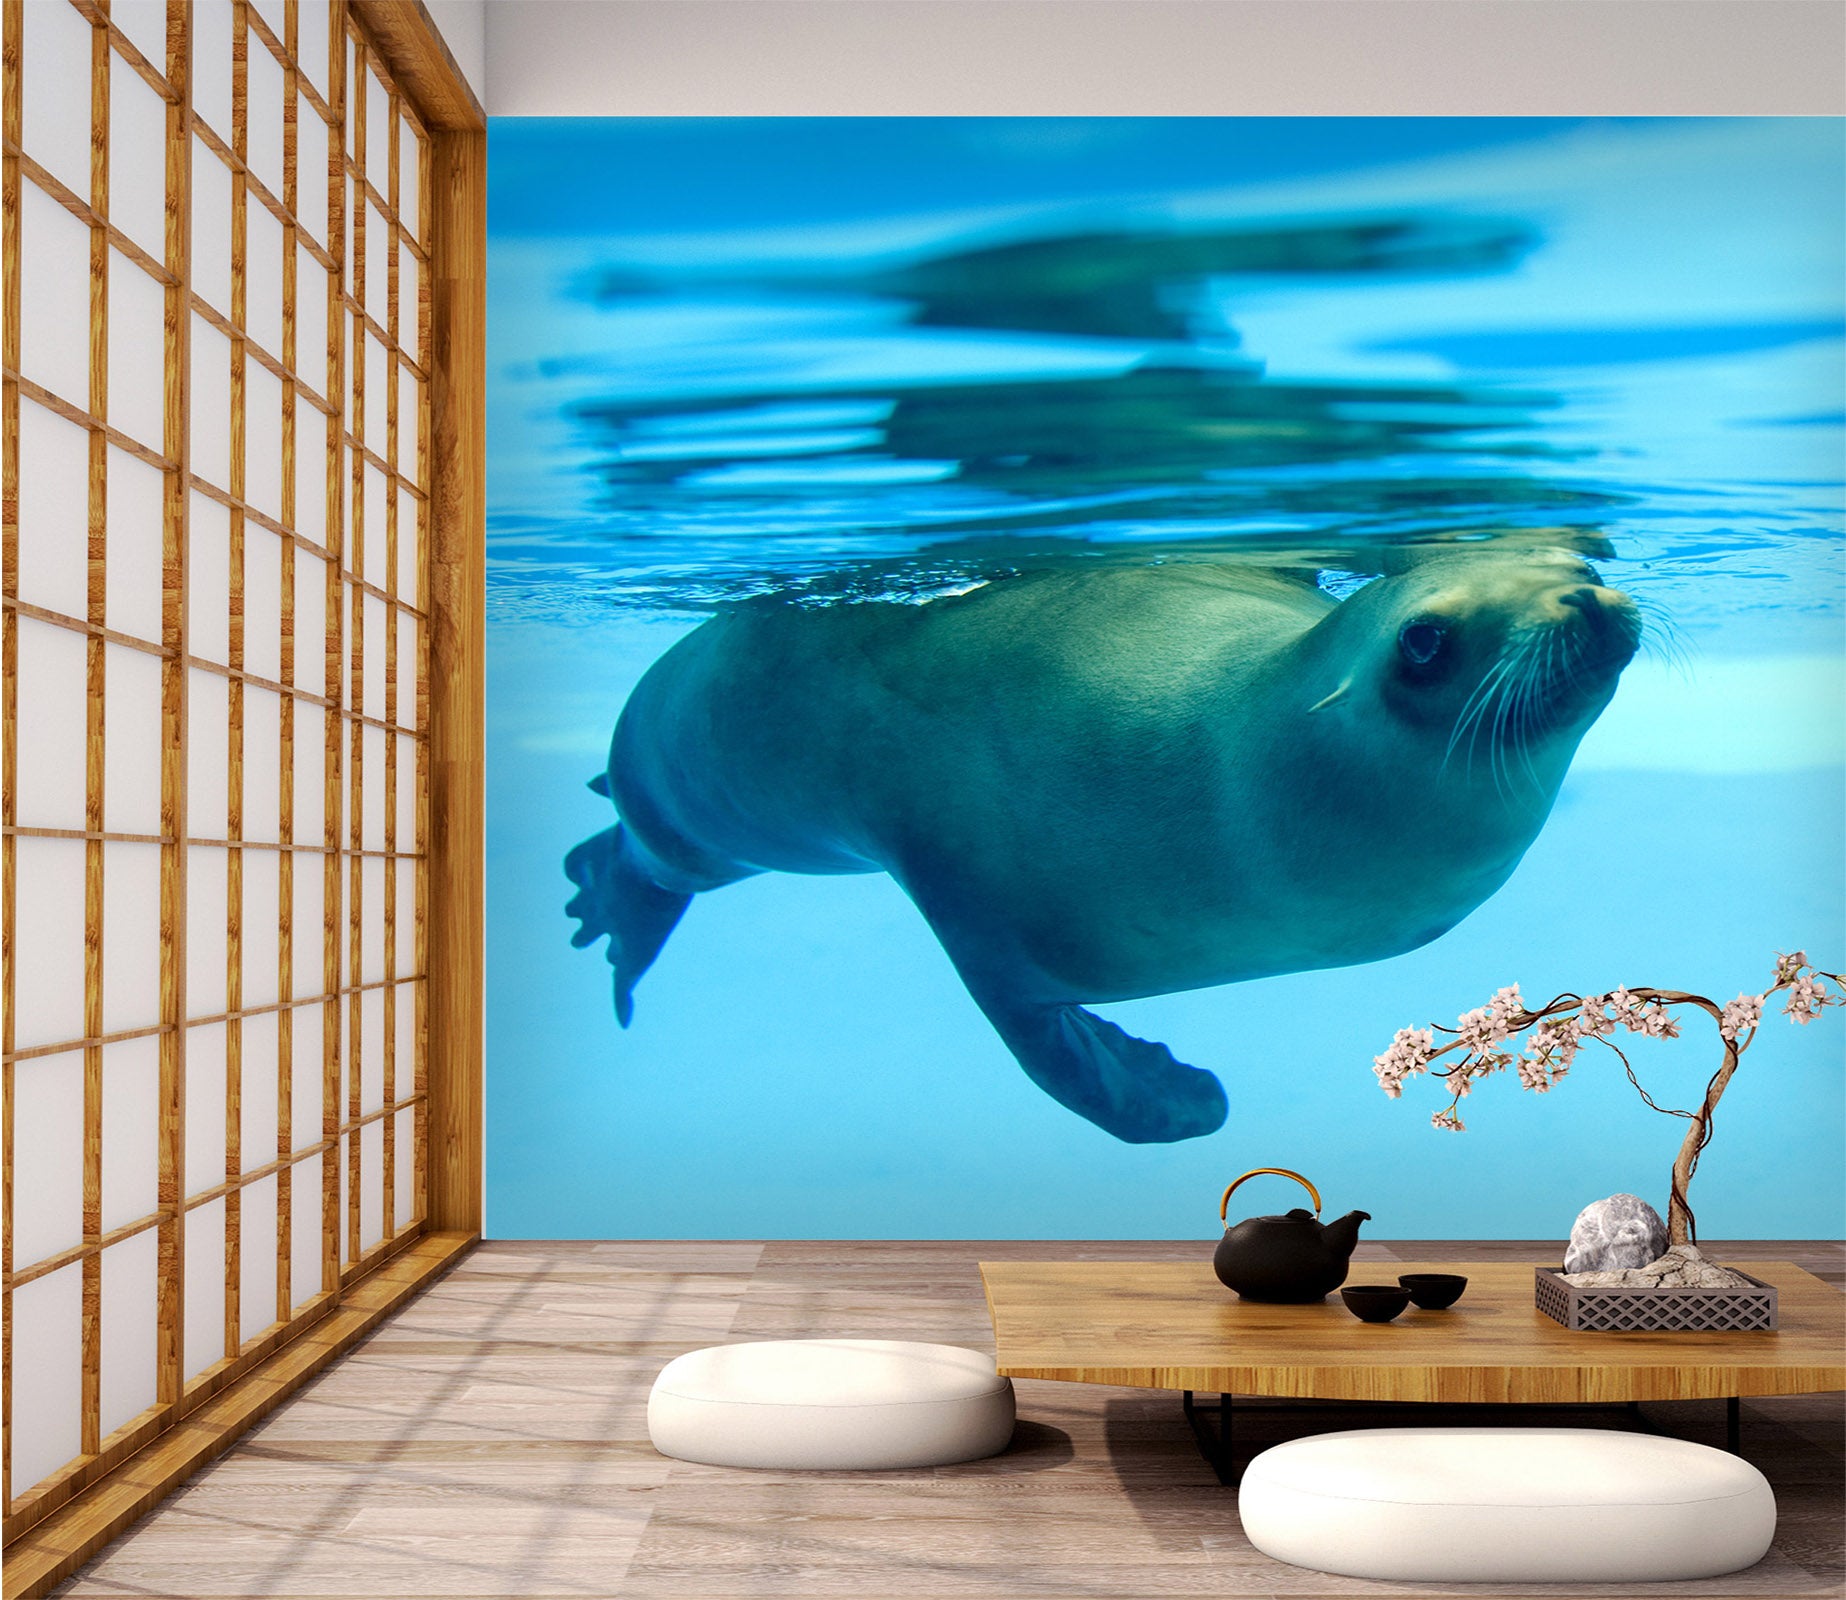 3D Deep Sea Seal 018 Wall Murals Wallpaper AJ Wallpaper 2 